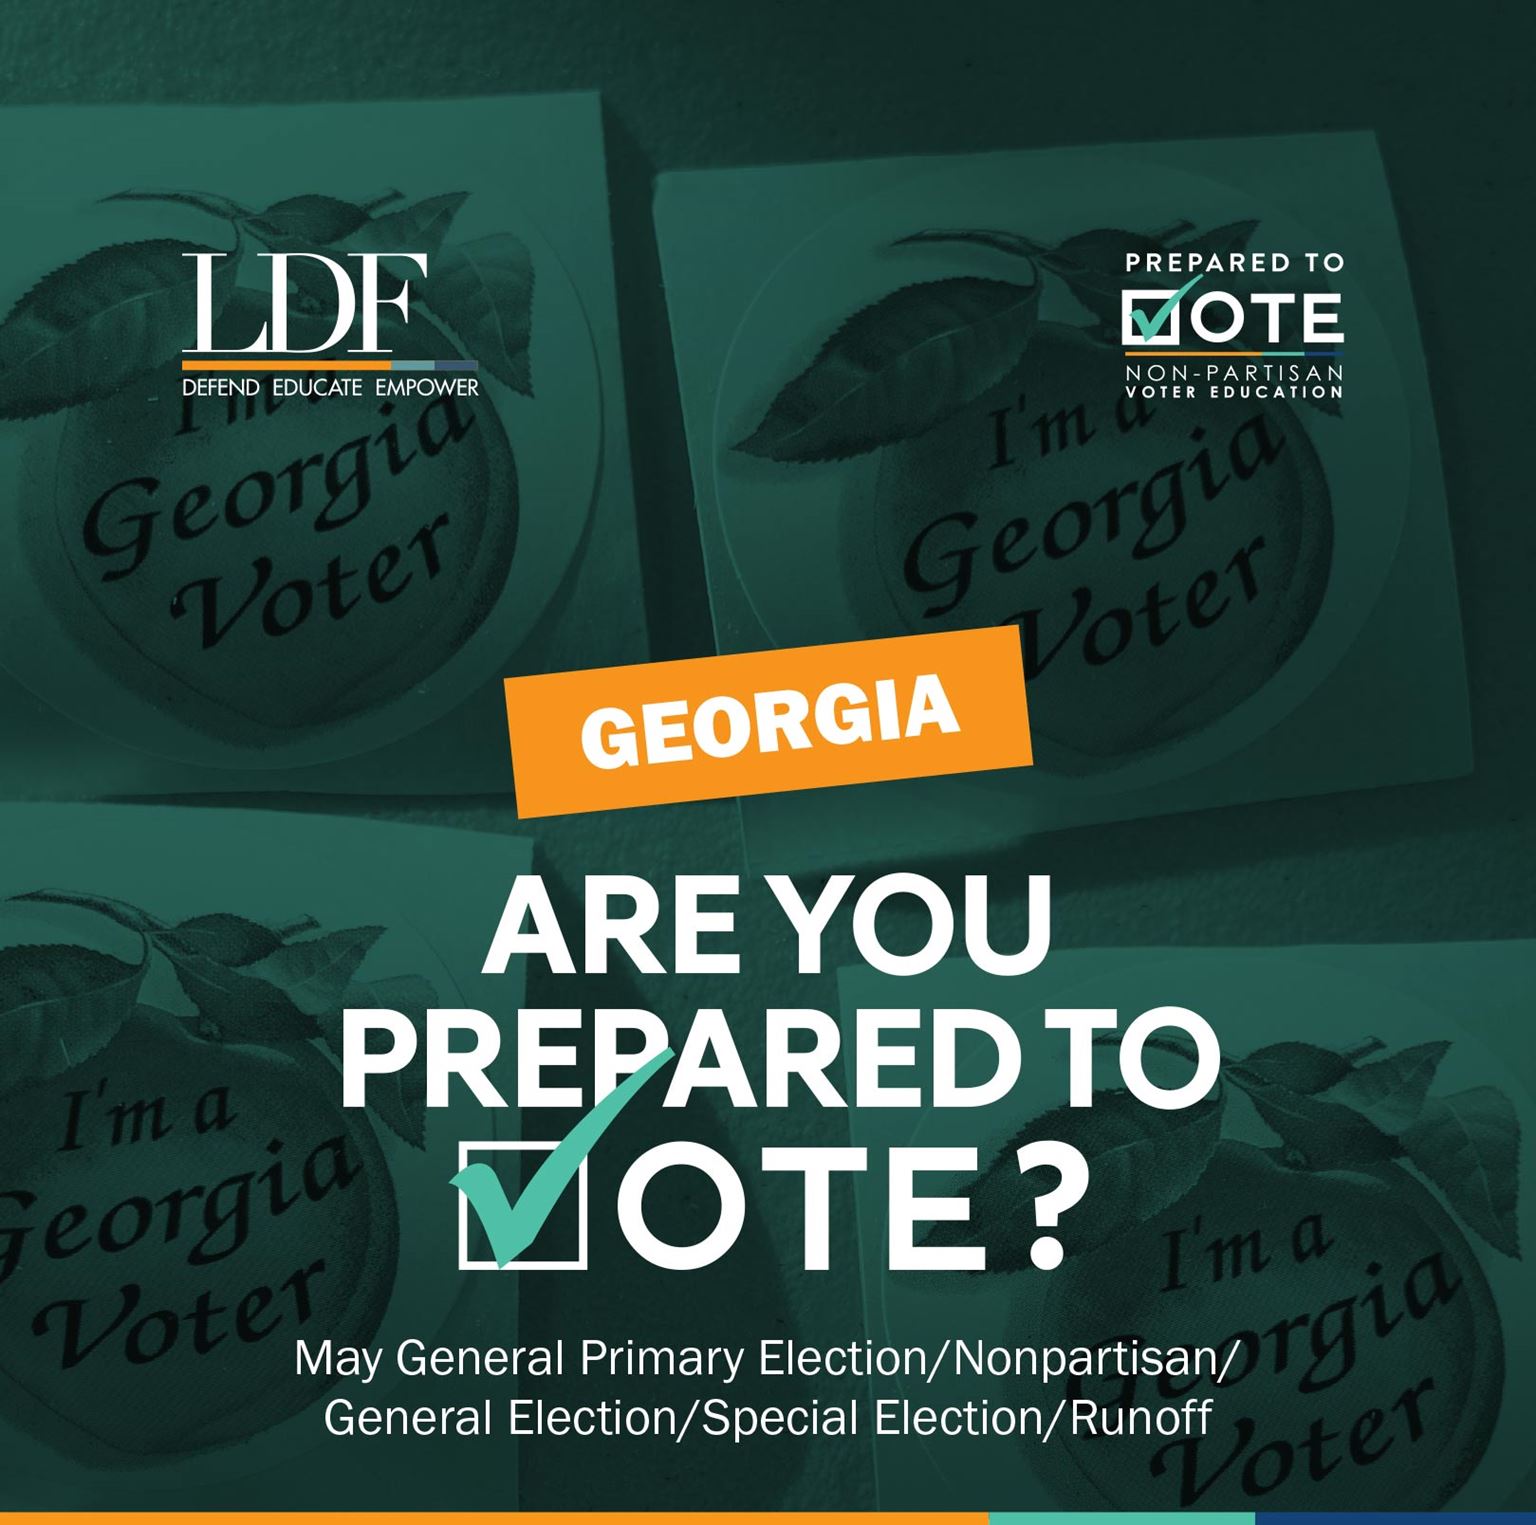 Georgia: Are you prepared to vote?